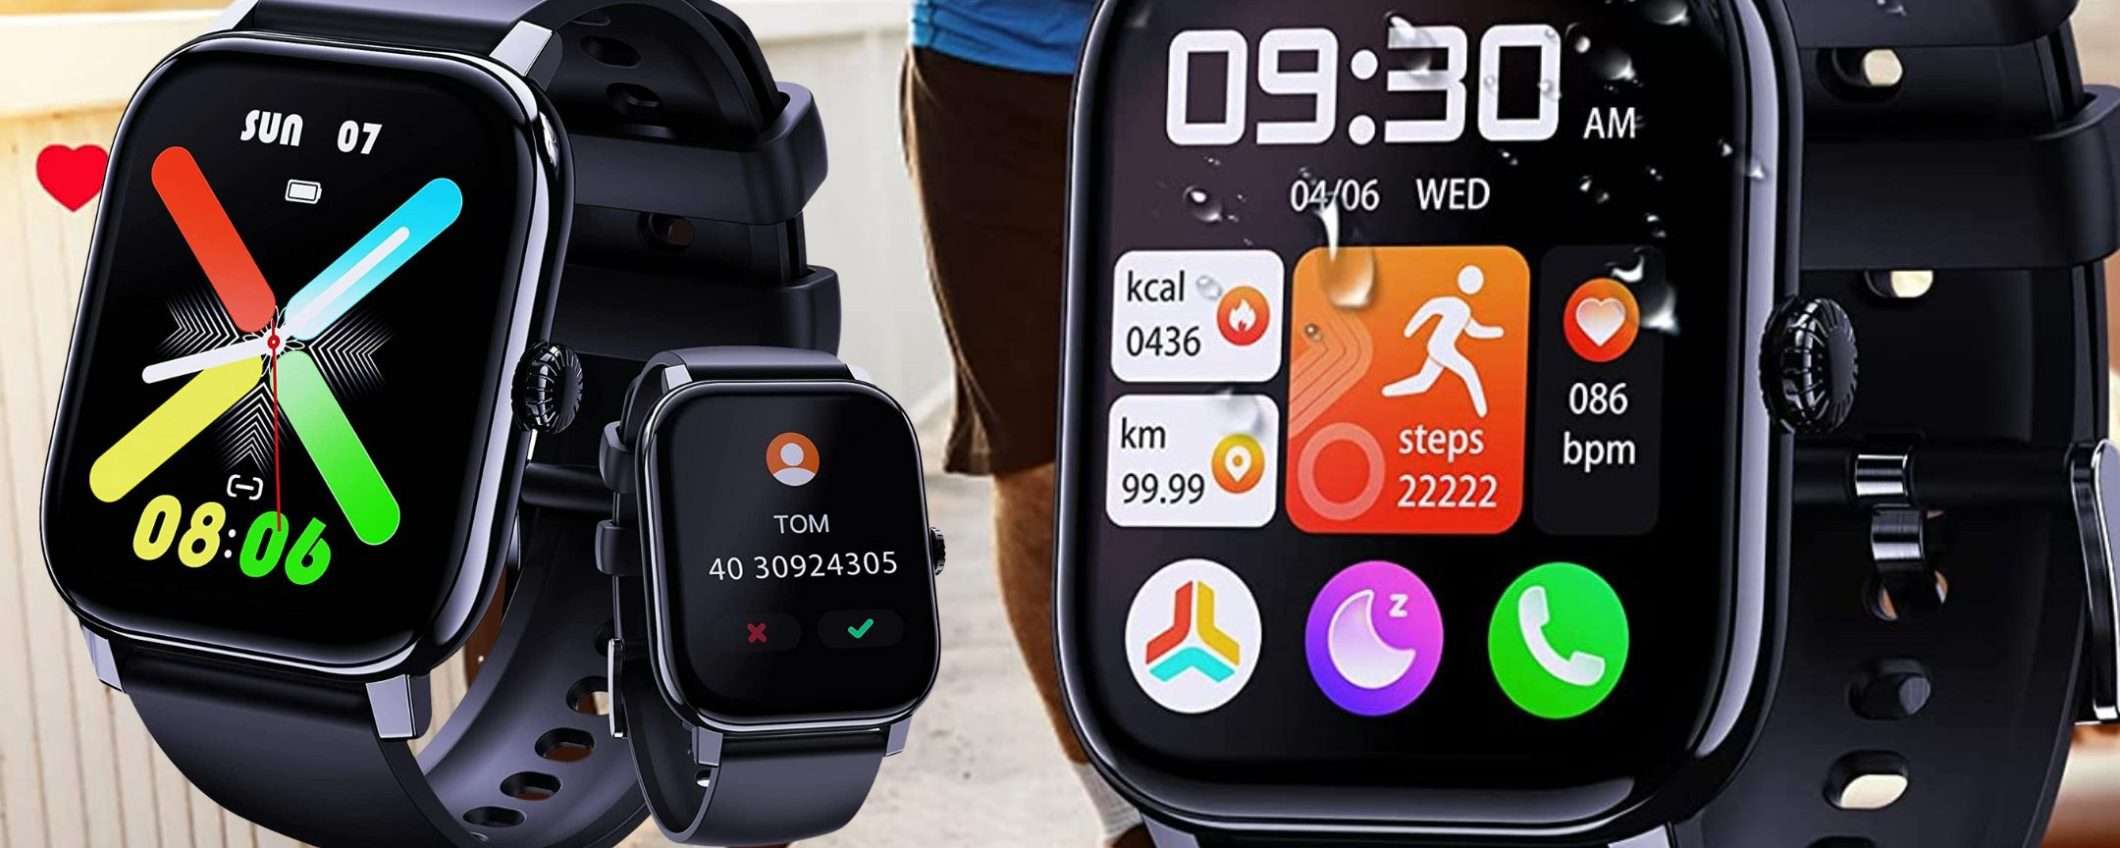 Smartwatch con schermo WOW, telefonate, tante funzioni e prezzo MINI? Eccolo! (24€)